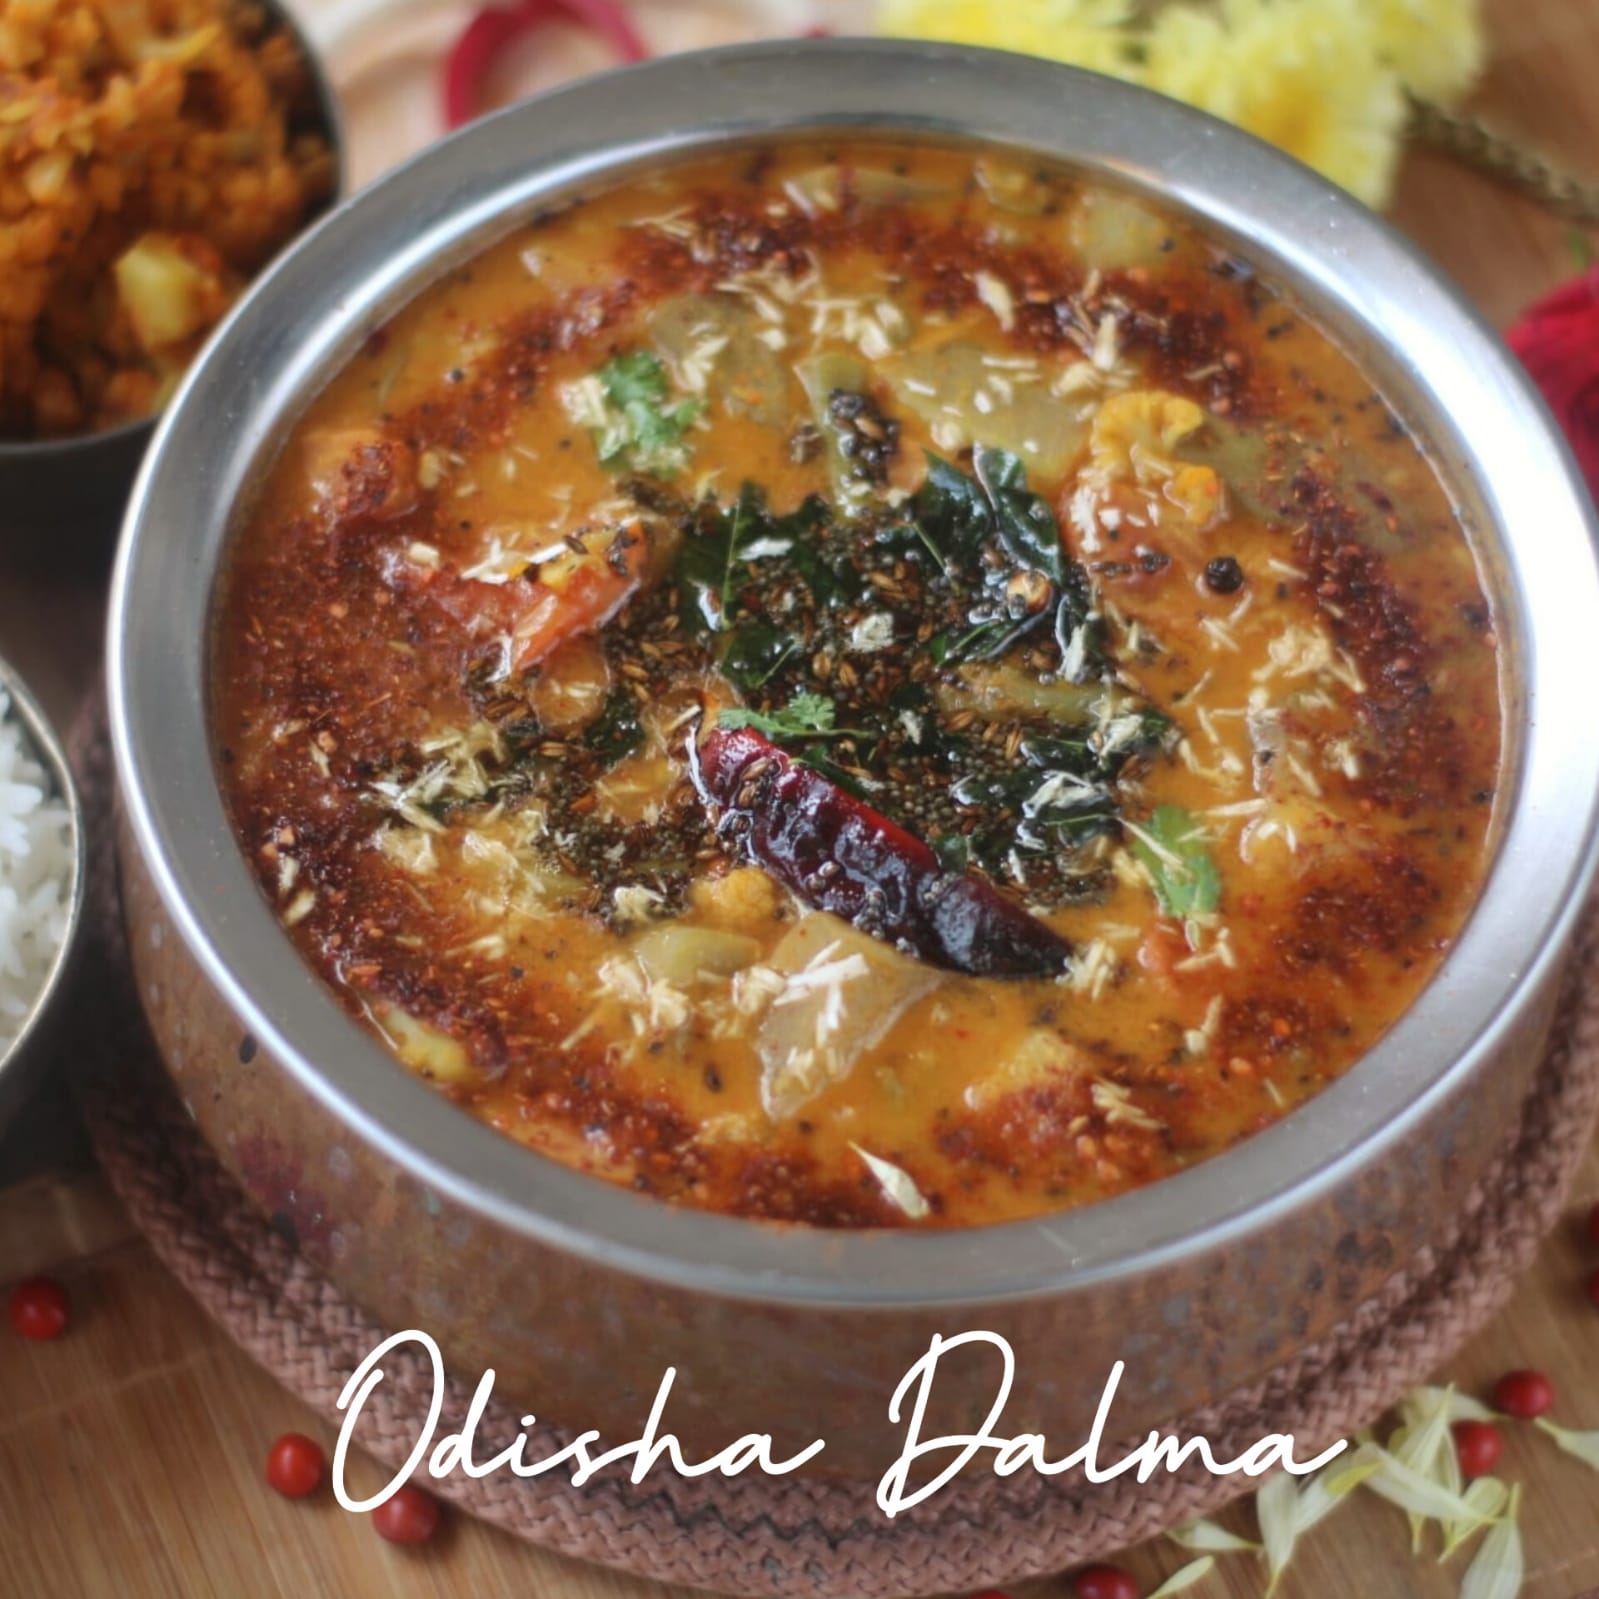 Odisha Dalma Recipe